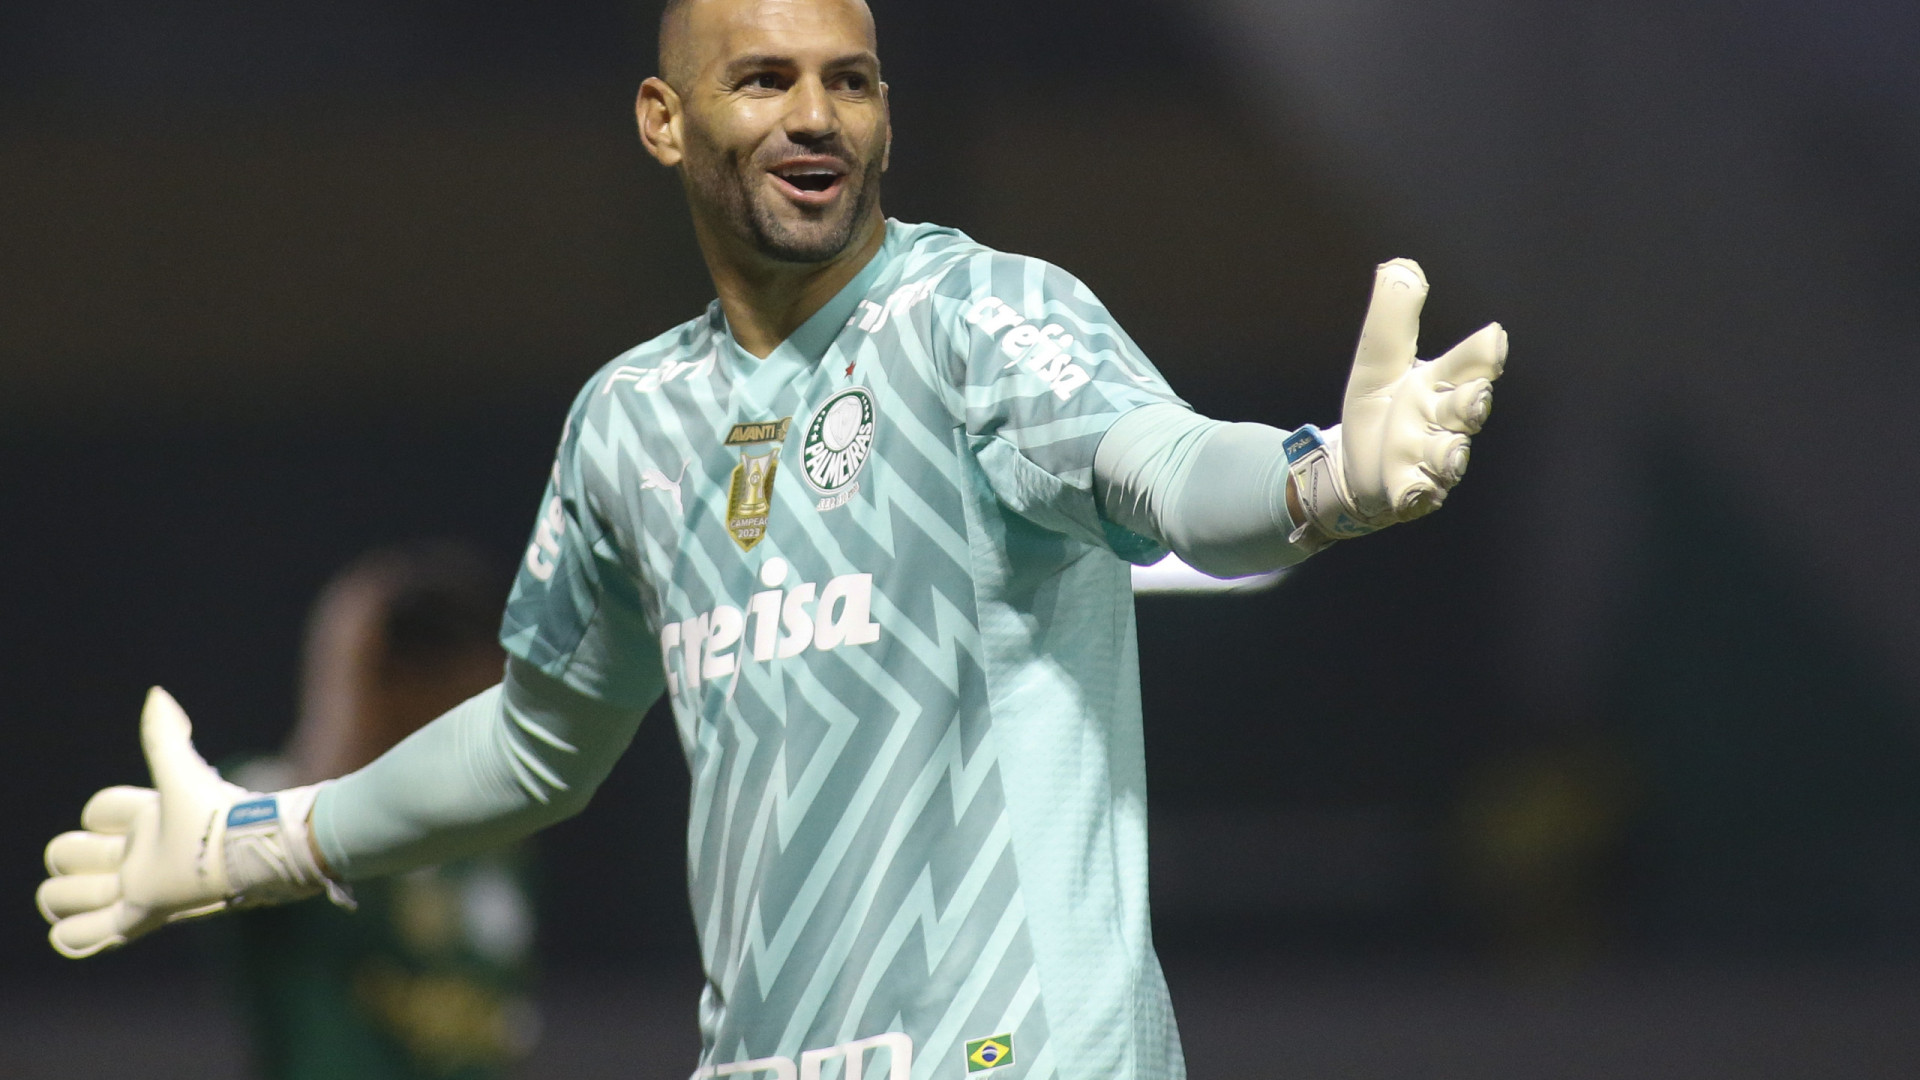 Ultrapassou o Velloso: Weverton se destaca como segundo goleiro mais vitorioso do Palmeiras no Allianz Parque